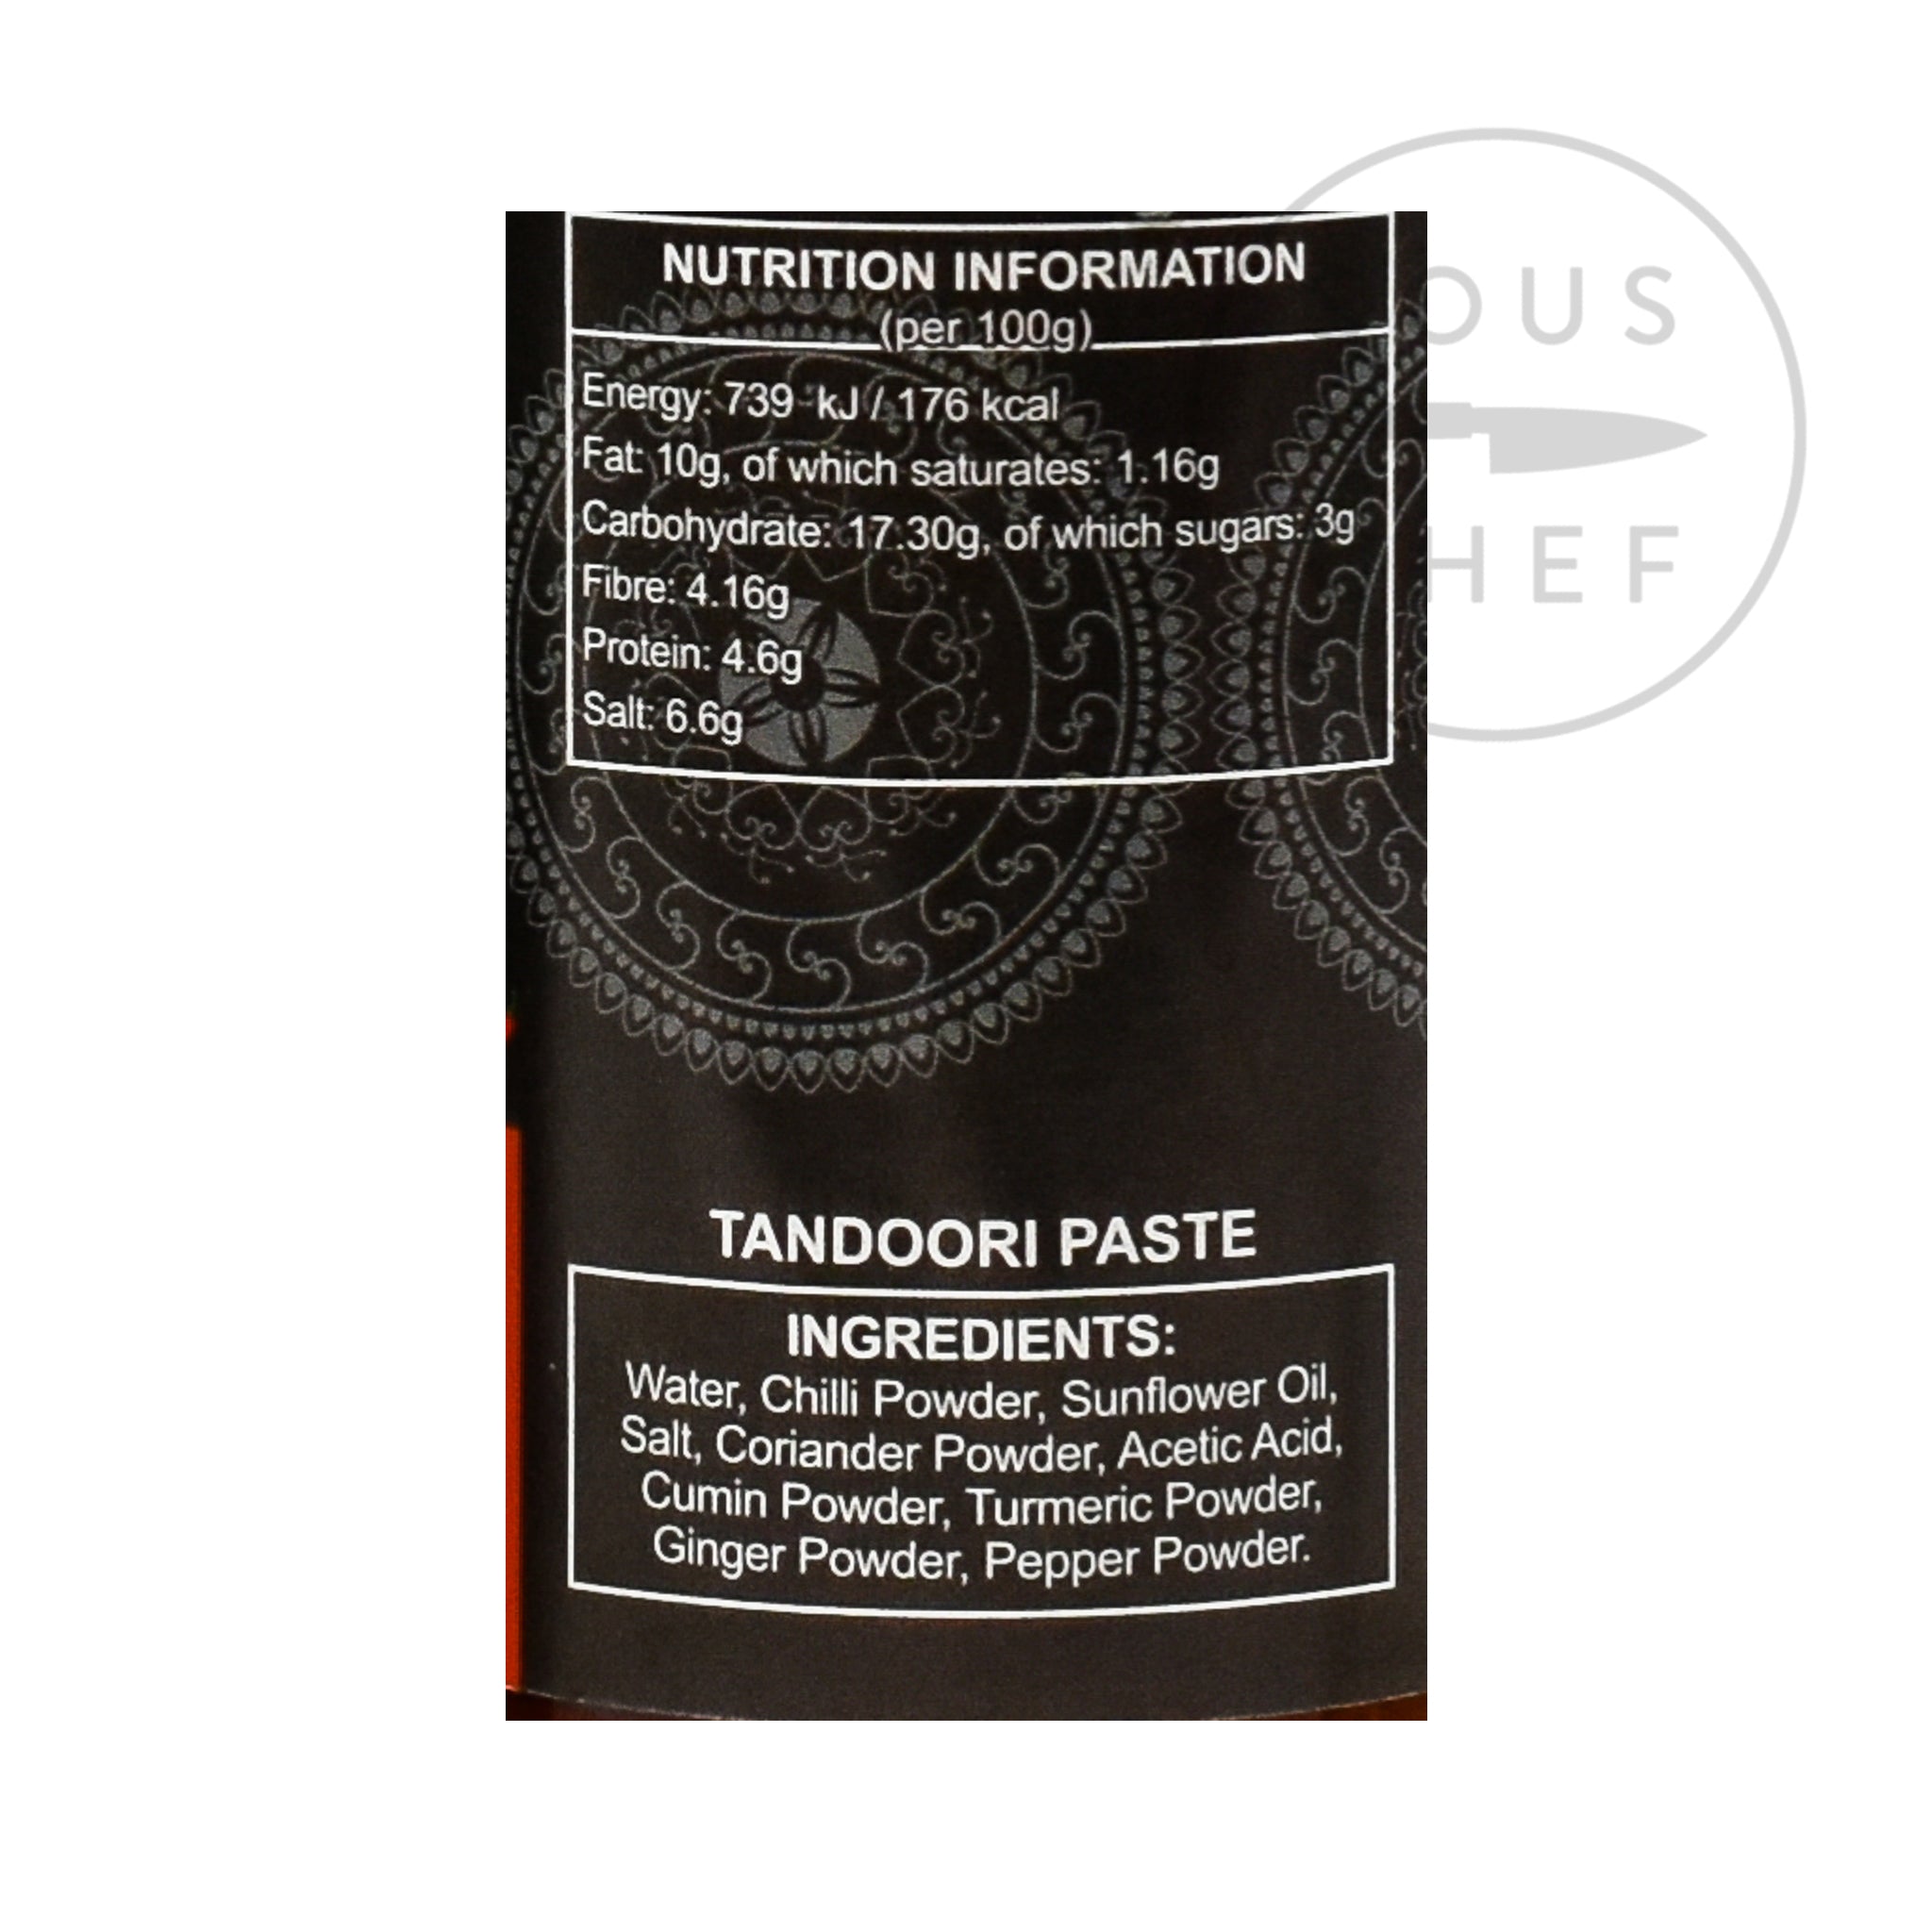 Ferns' Tandoori Paste 380g nutritional information ingredients